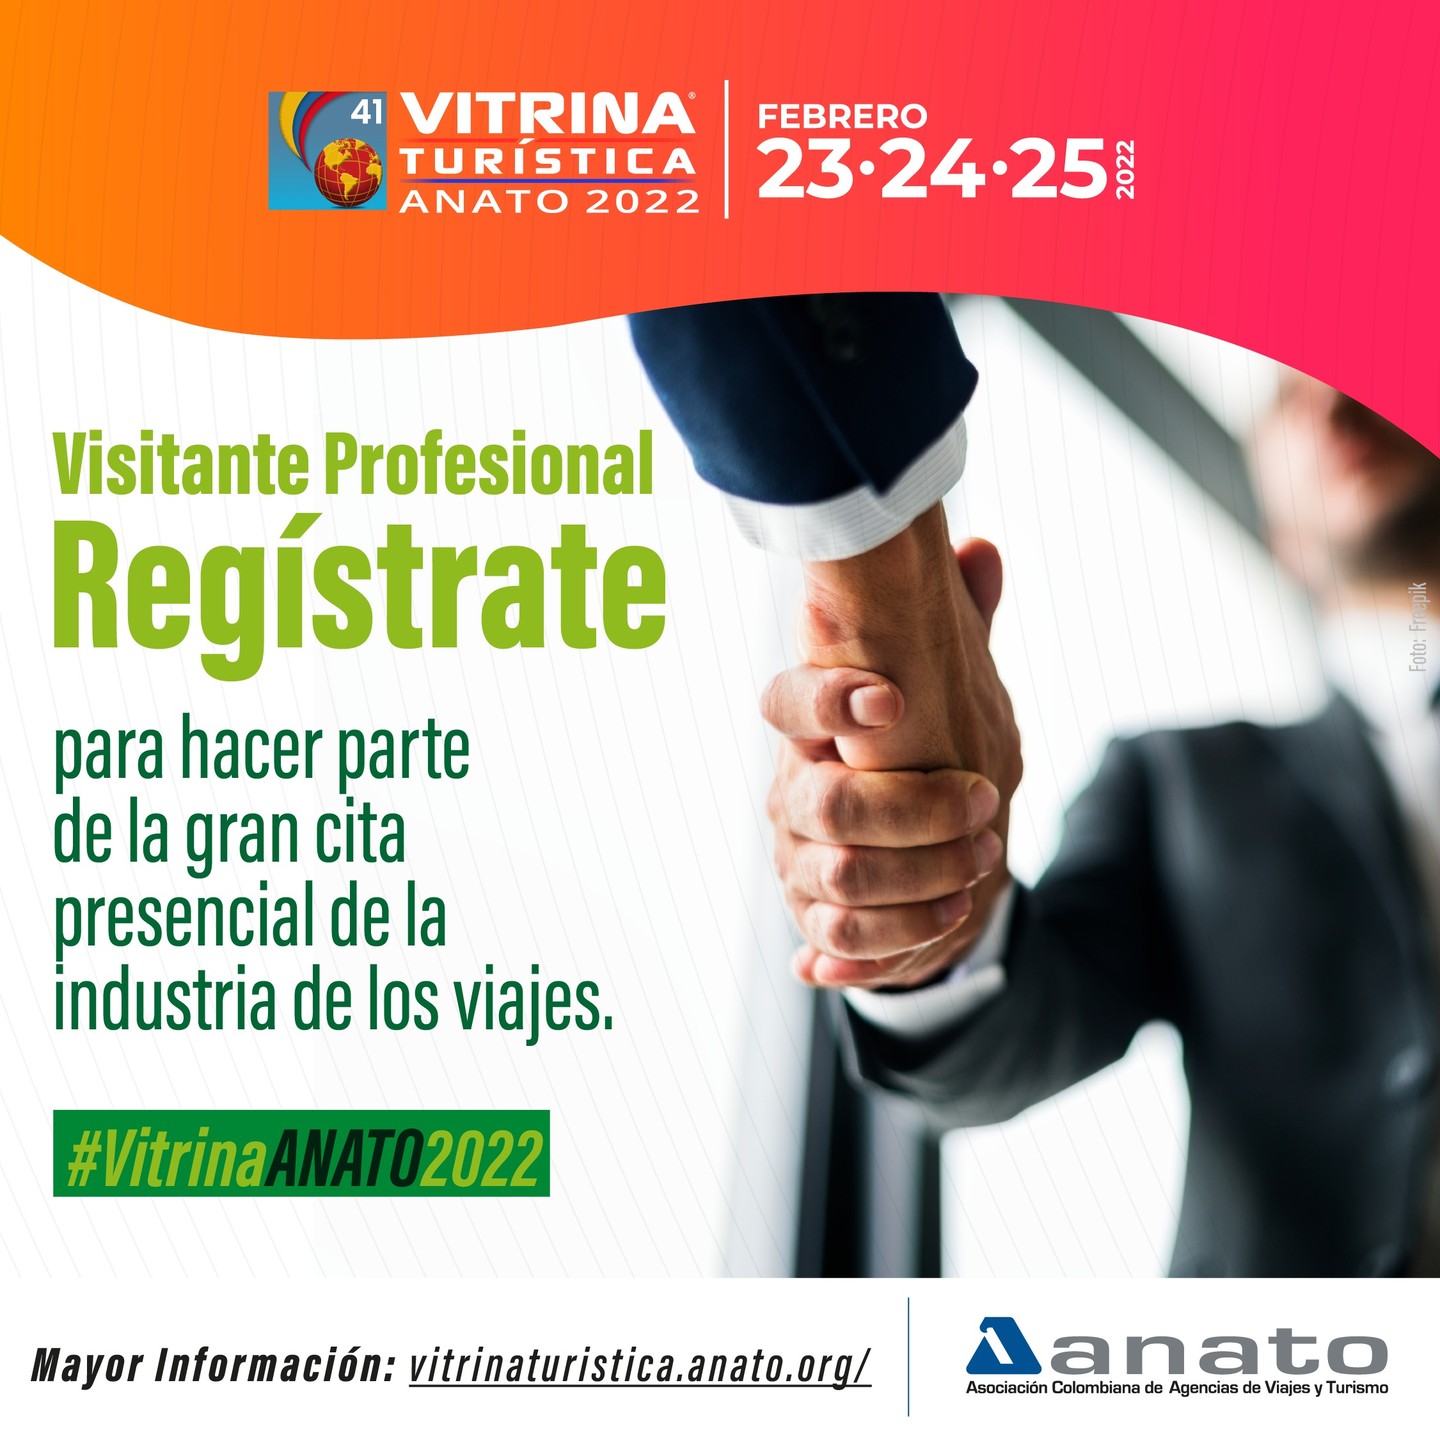 Los profesionales del turismo se reunirán en la #VitrinaANATO2022, el próximo 23, 24 y 25 de febrero en Corferias-Bogotá.

Realiza tu registro a este evento profesional, aquí: https://vitrinaturistica.anato.org/registro/ (link activo en nuestras historias)